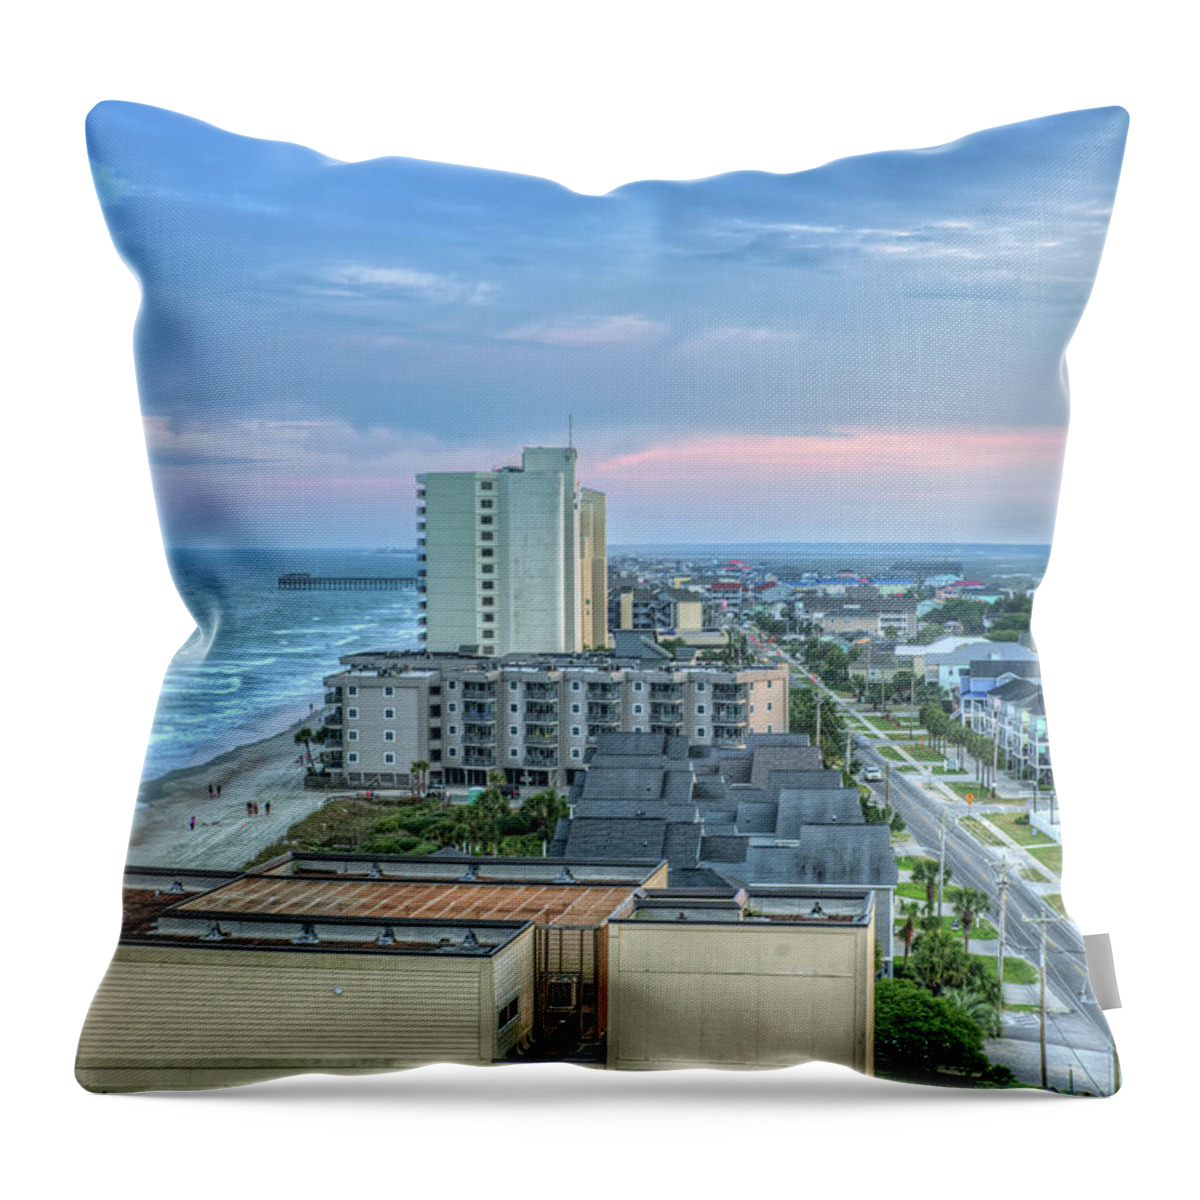 Garden City Throw Pillow featuring the photograph Garden City Beach by Mike Covington